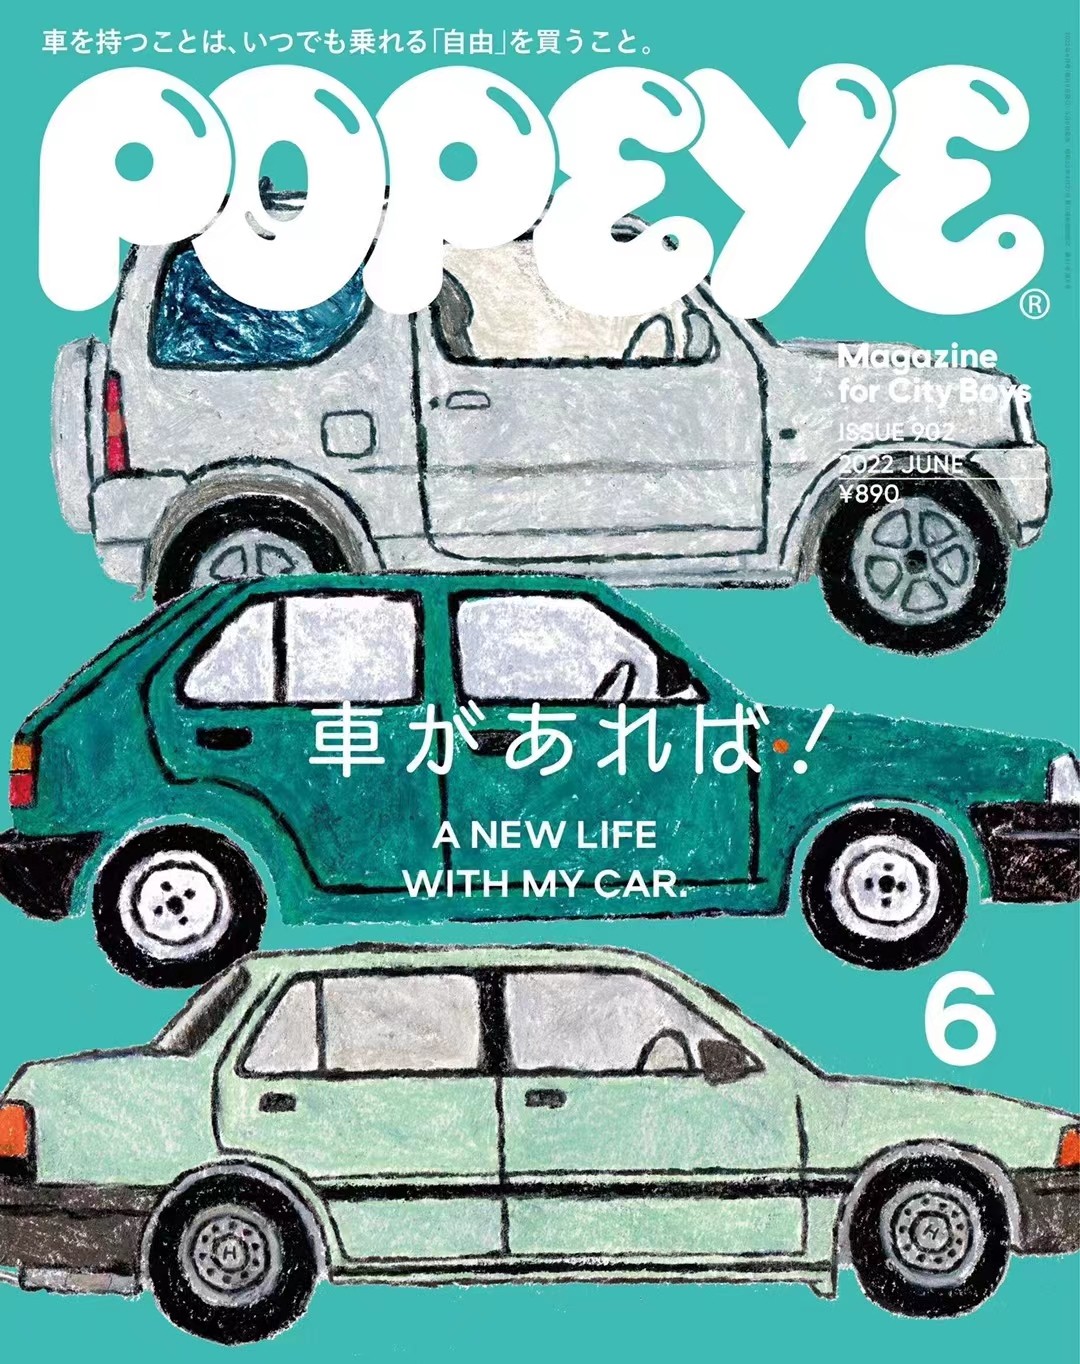 【瑜伽健身上新】 【日本】 001 Popeye 2022年06月 日本时尚男士服装搭配穿搭杂志